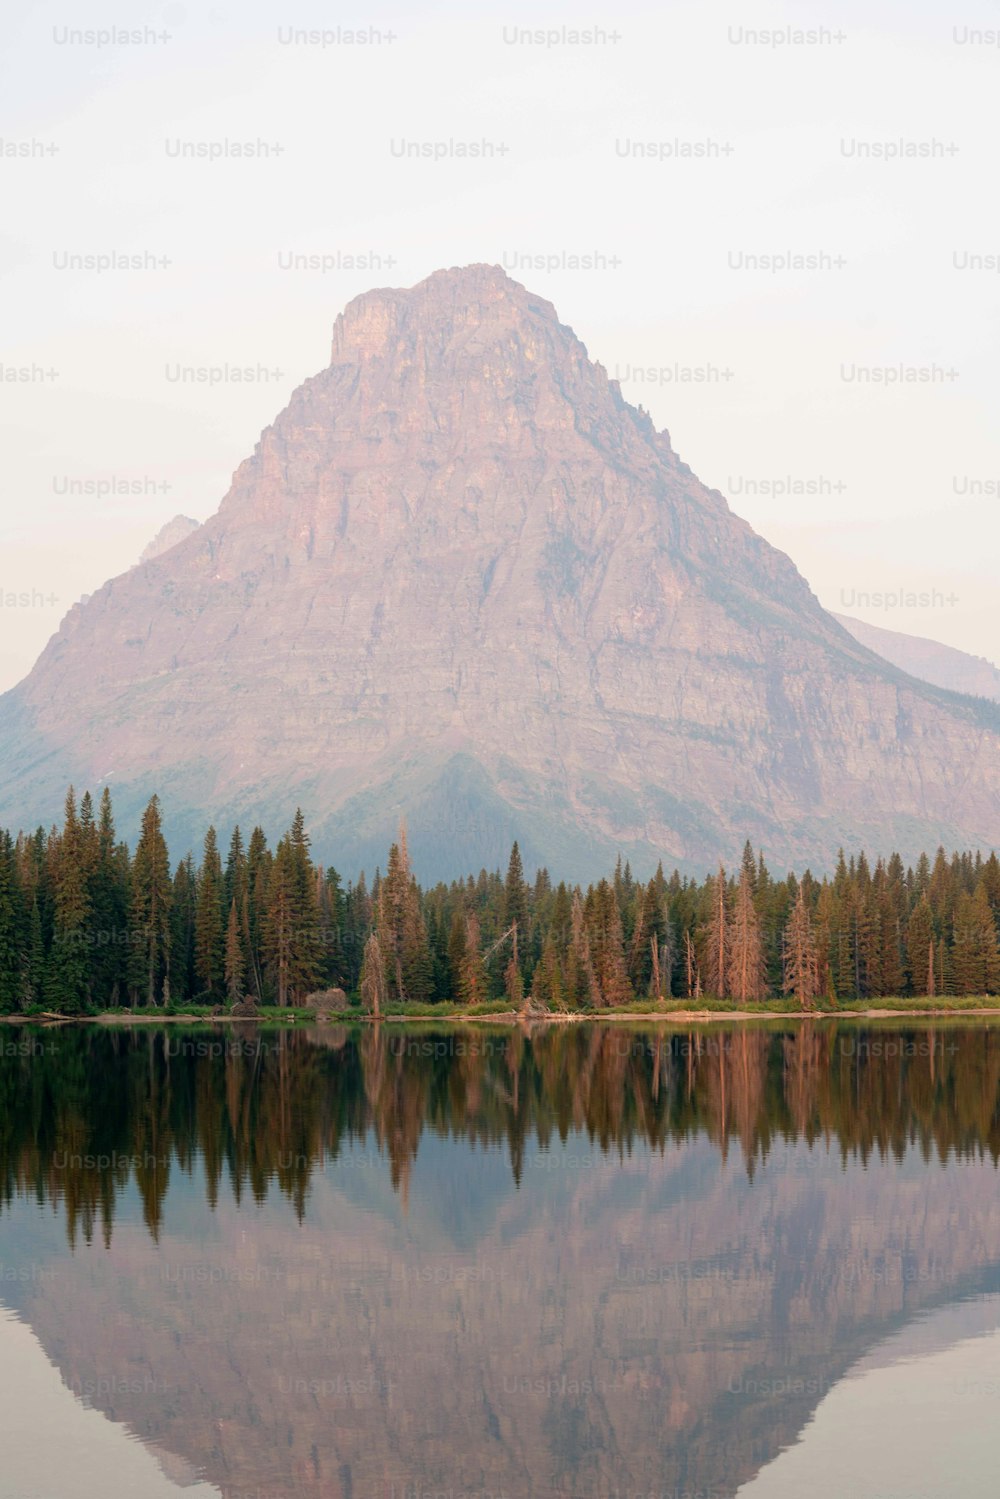 Une montagne se reflète dans l’eau calme d’un lac